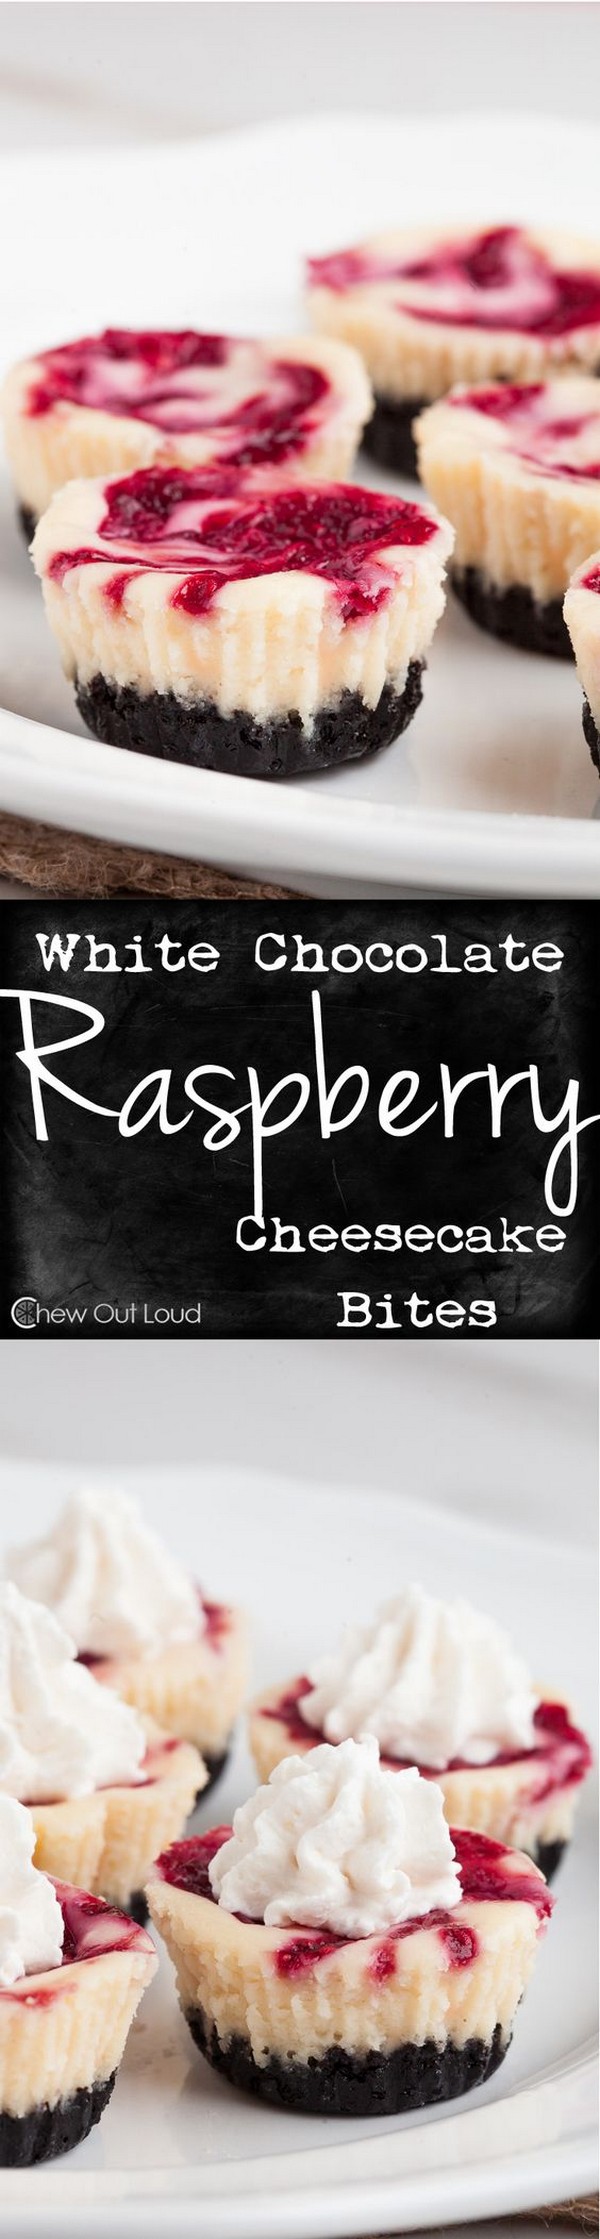 White Chocolate Raspberry Cheesecake Bites